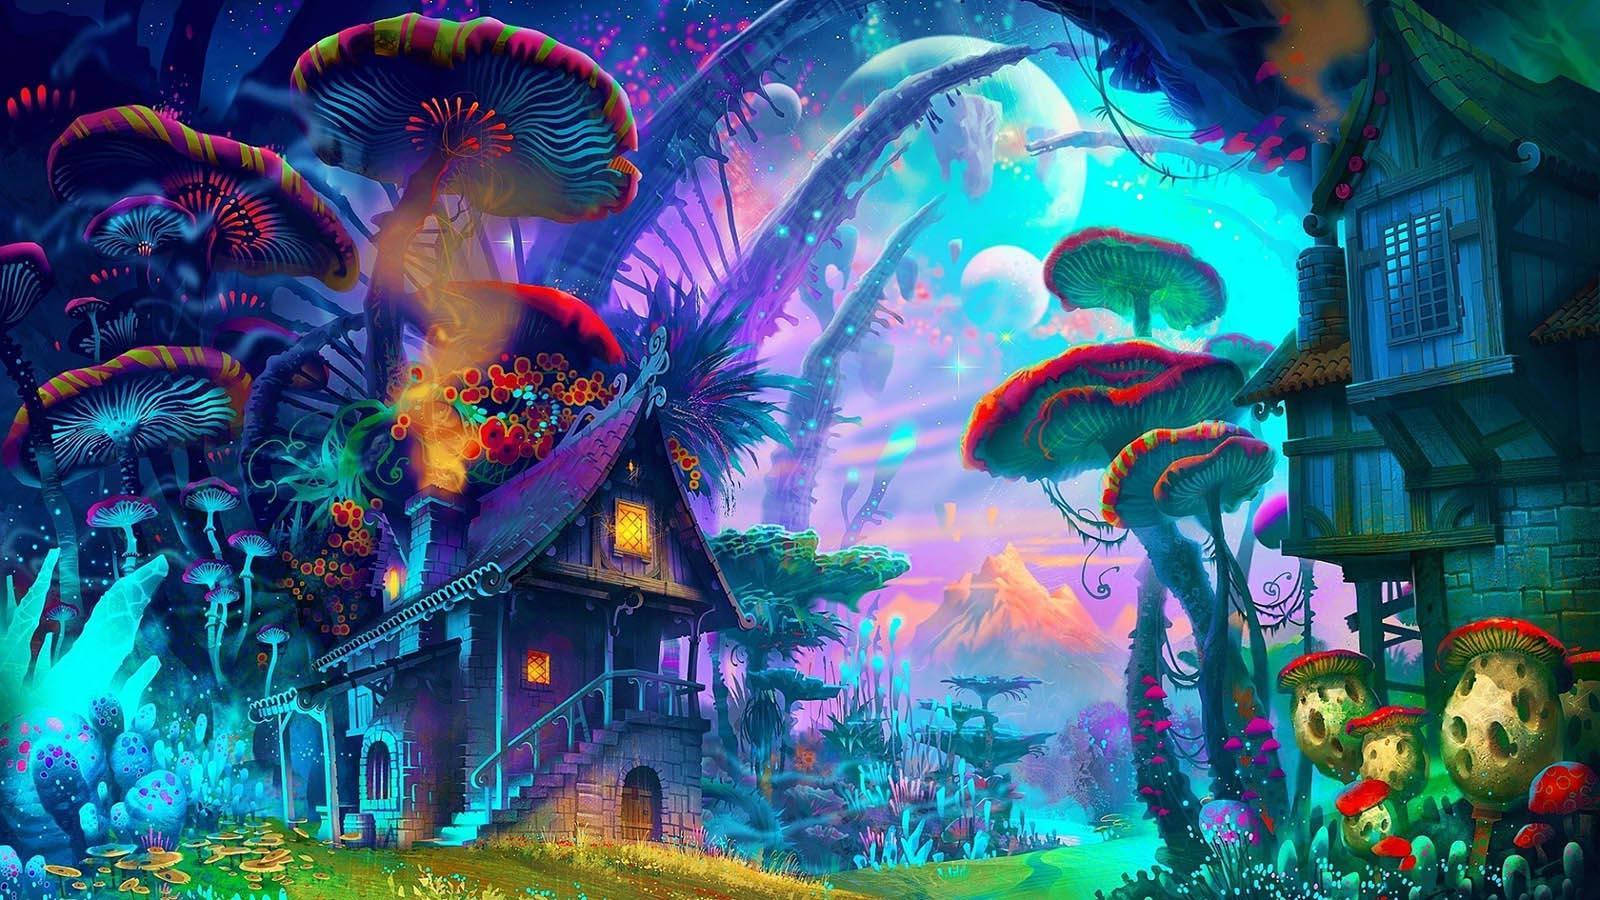 Fantasy Mushroom Village wallpaper.